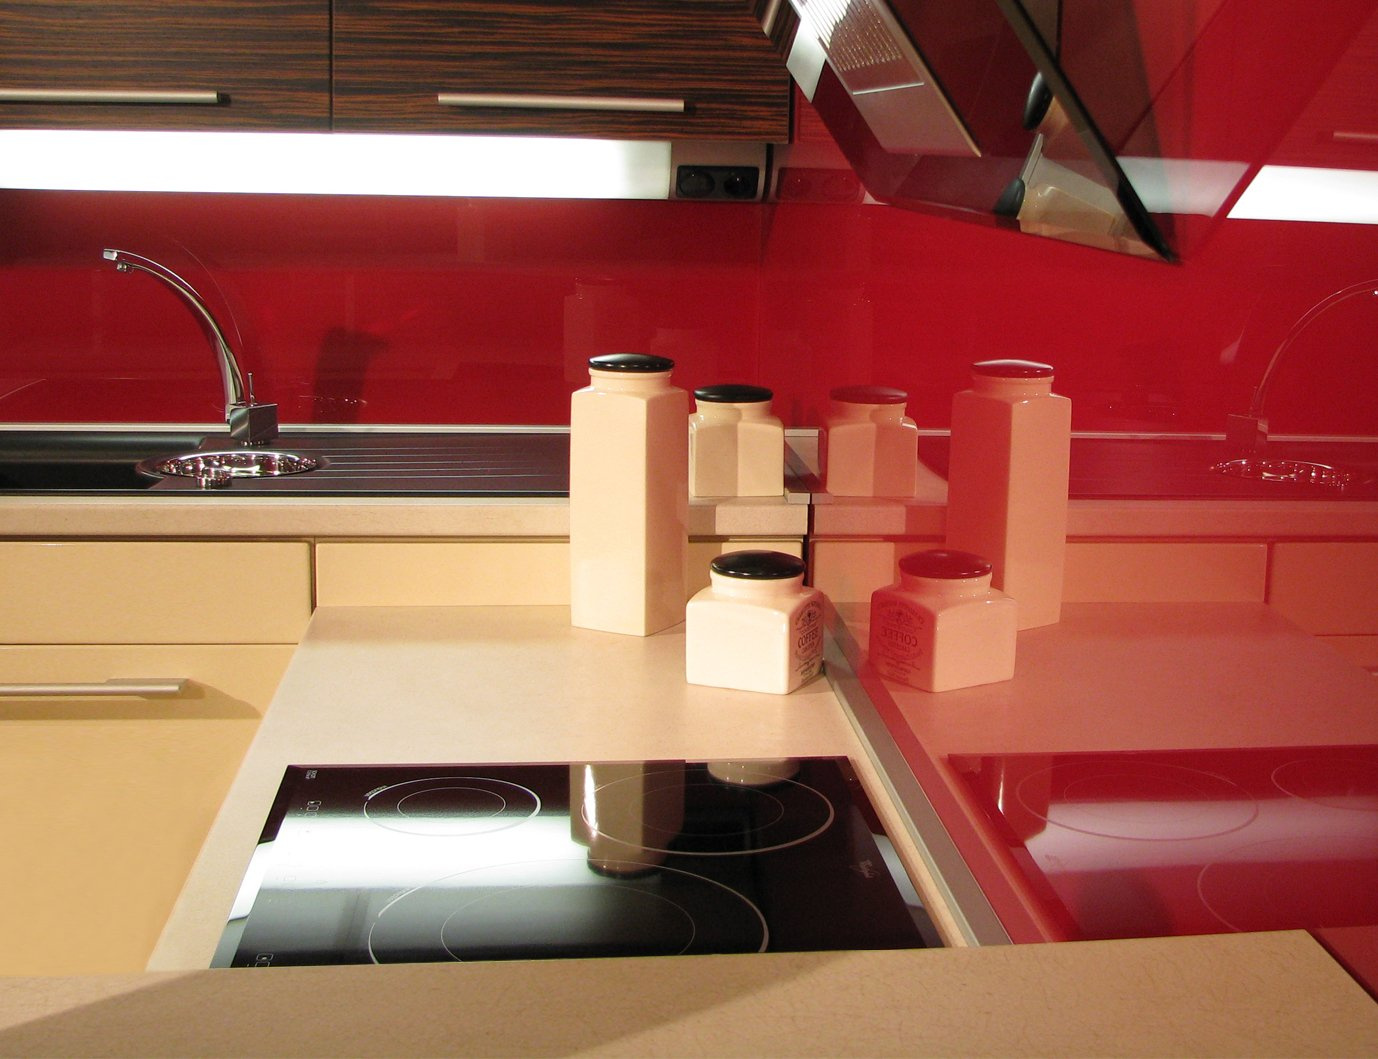 Moderní tmavě červený obklad do kuchyně